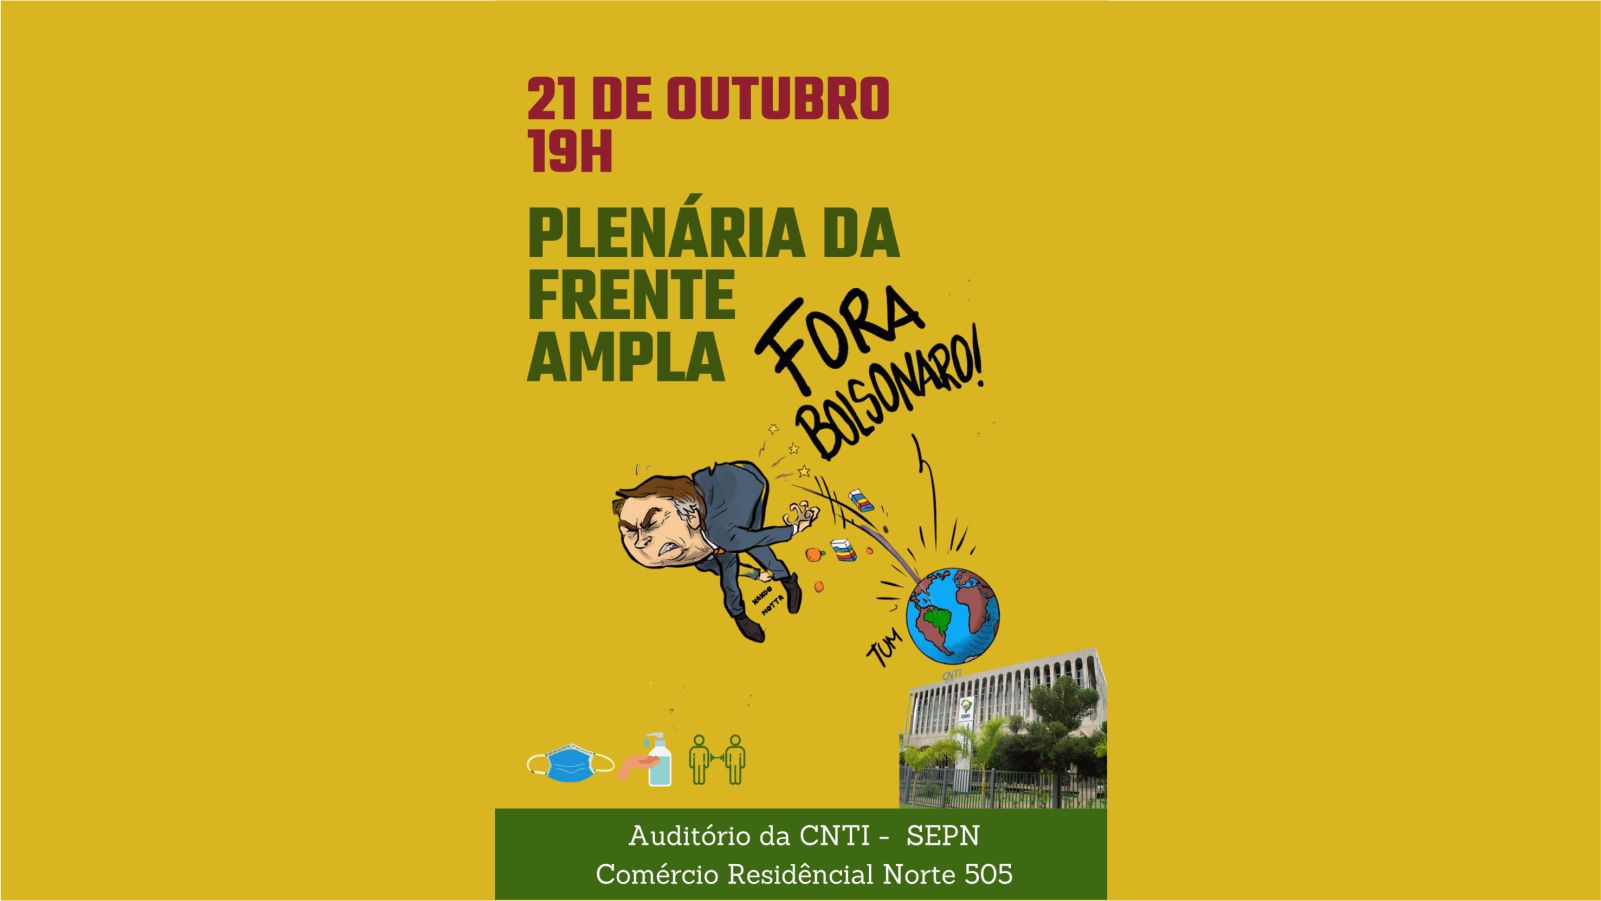 Plenária da Frente Ampla - Fora Bolsonaro - 21 de outubro